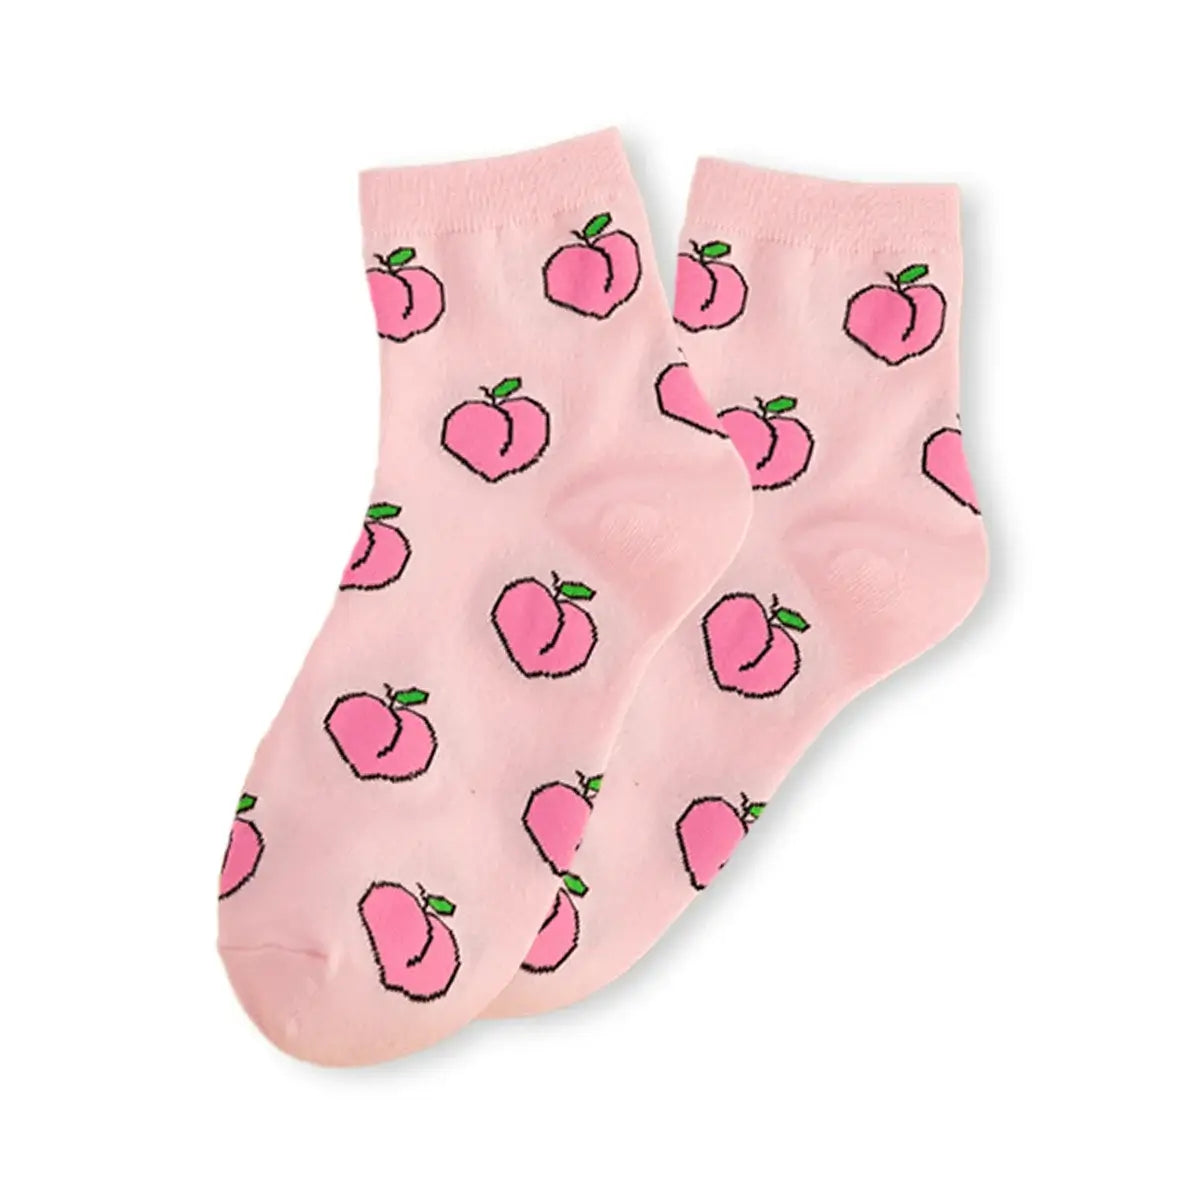 Chaussettes rose longues en coton à motif fruit pour adultes | Chaussettes douces et confortables | Fabriquées à partir de matériaux de haute qualité | Un cadeau parfait pour les hommes et les femmes de tous âges